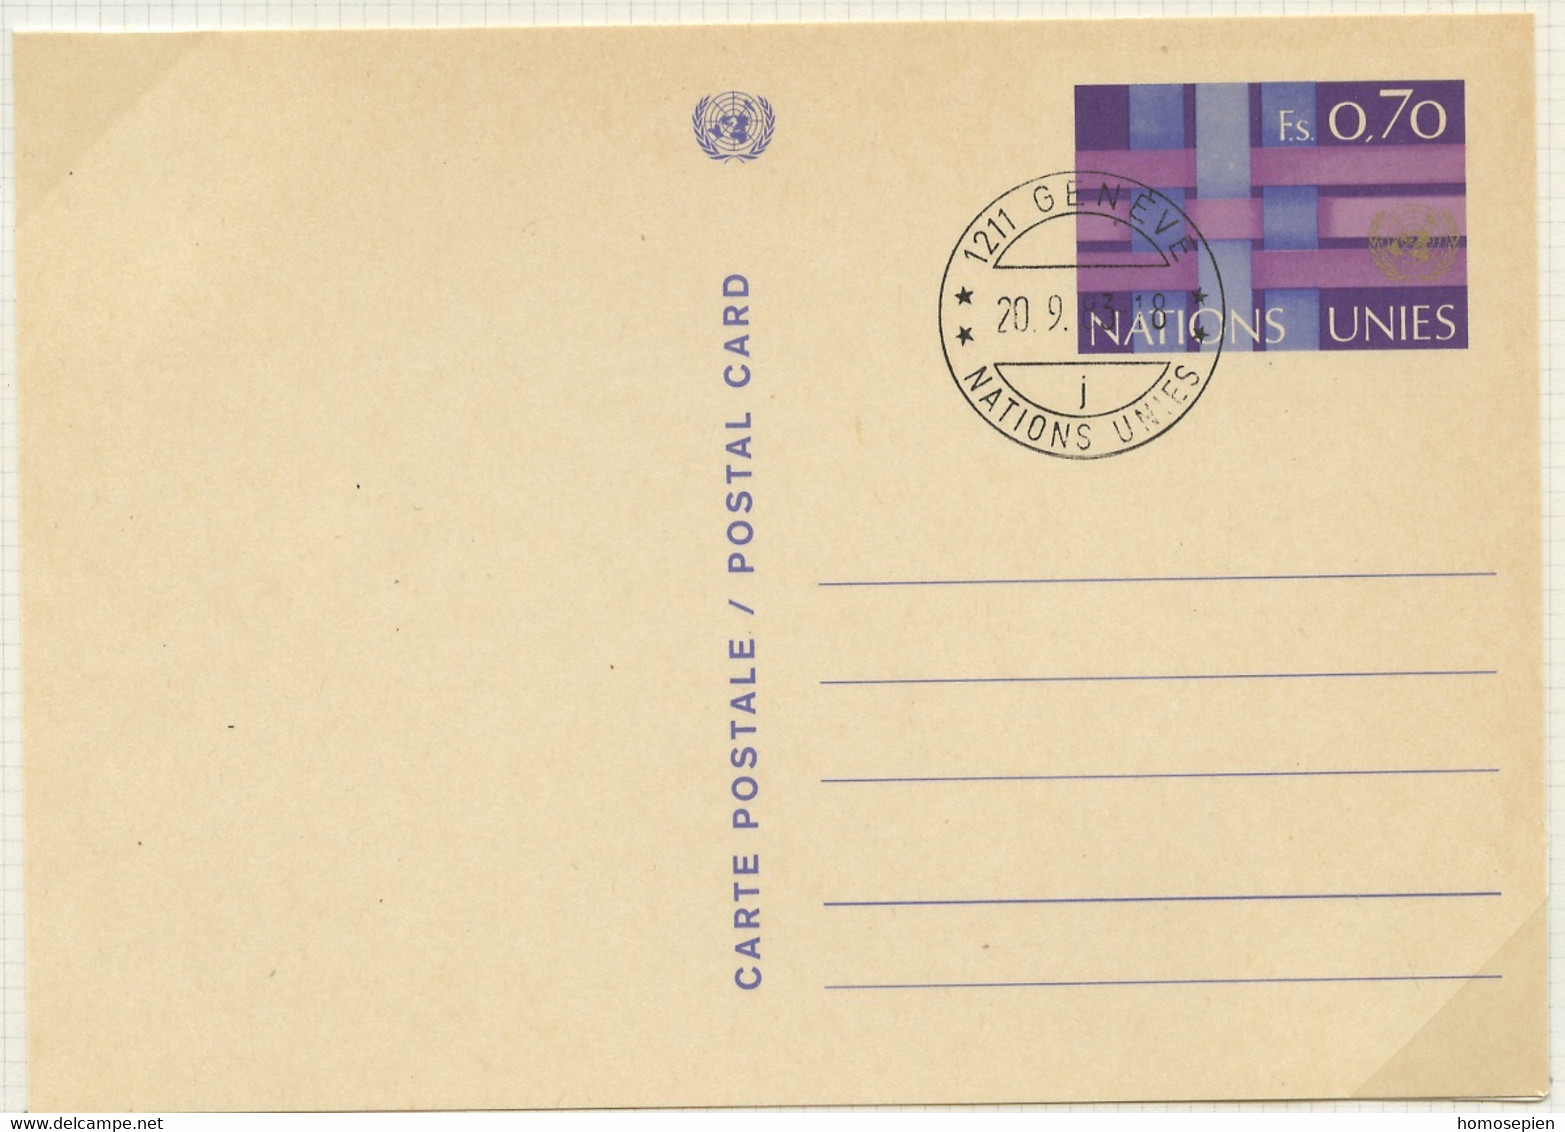 NU Genève - Vereinte Nationen Entier Postal 1977 Y&T N°EP1977-02 - Michel N°GZS1977-02 (o) - 70c Entrecroisement - Covers & Documents